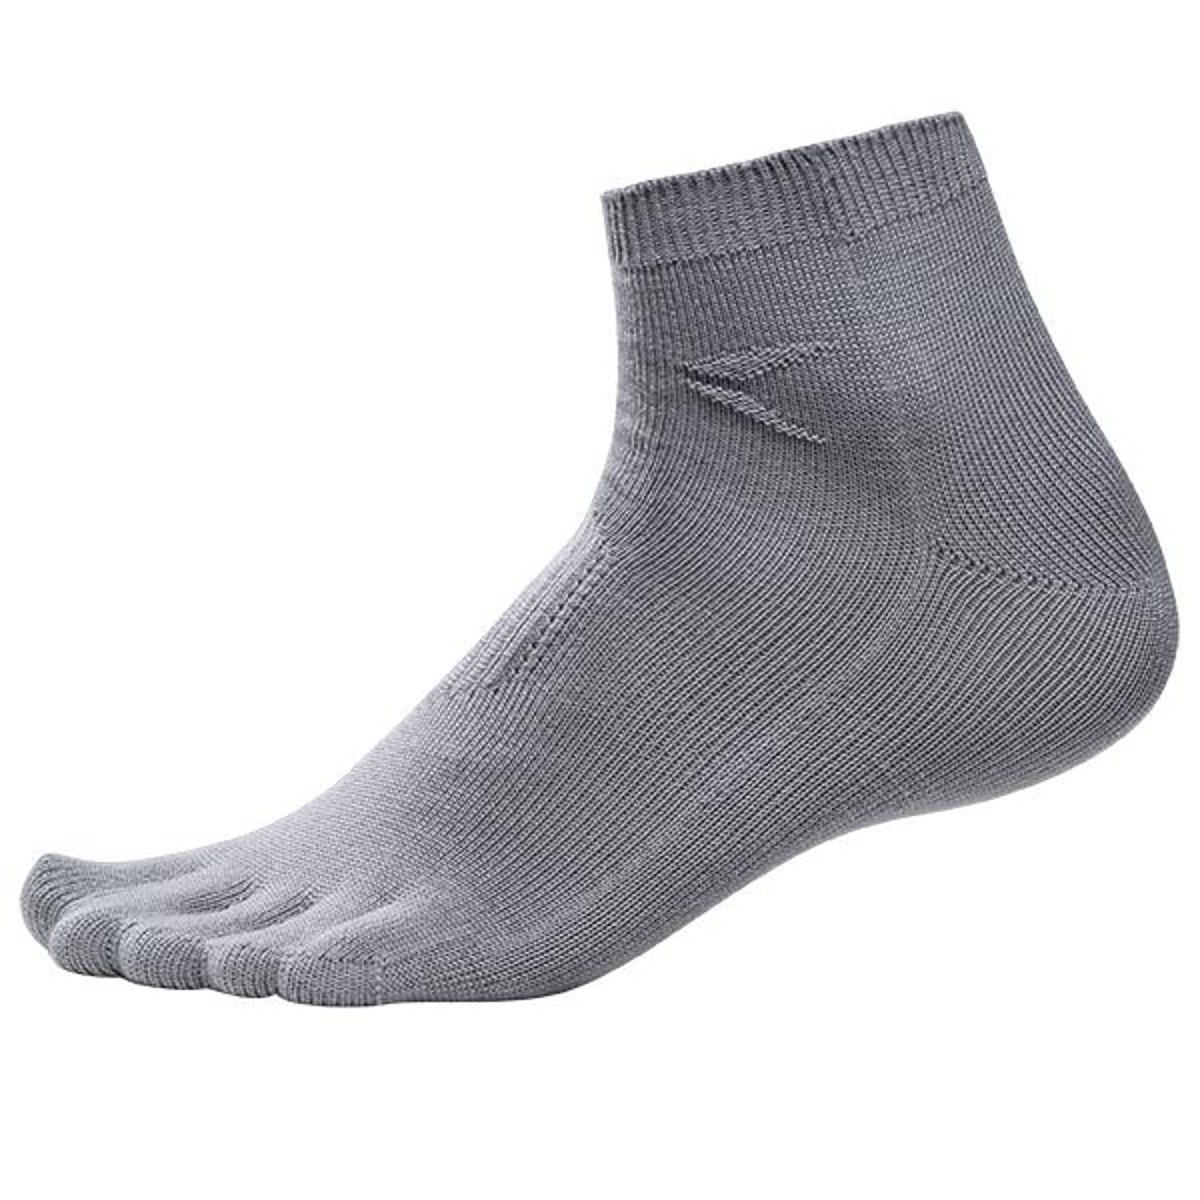 Pfanner Zehen-Taschen-Socken low